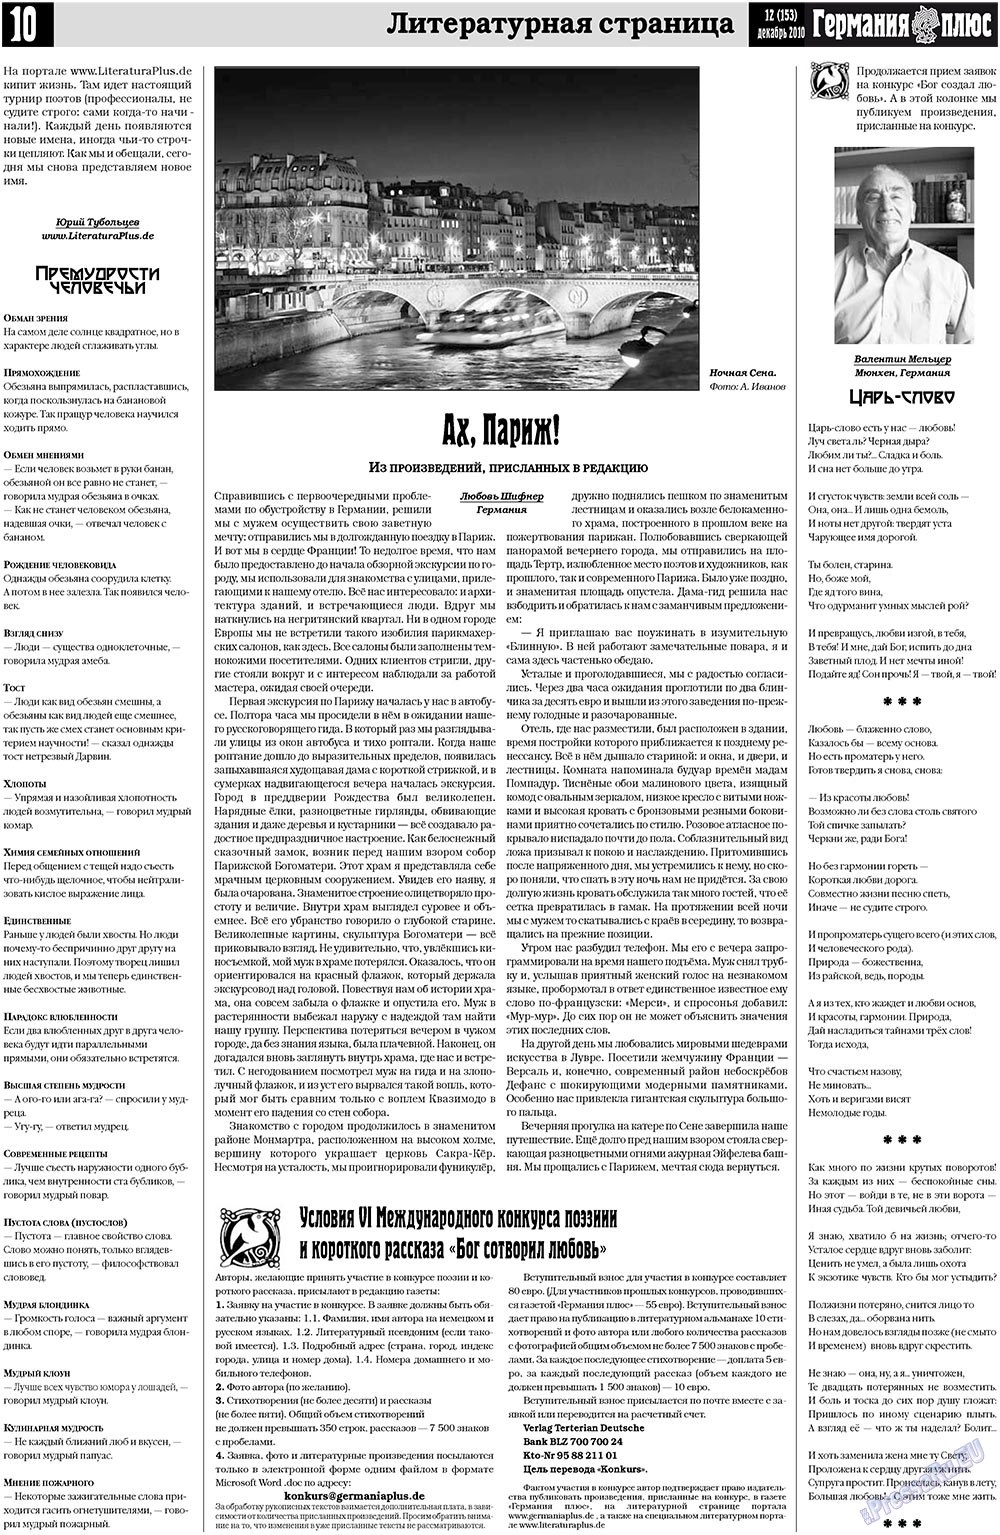 Германия плюс (газета). 2010 год, номер 12, стр. 10